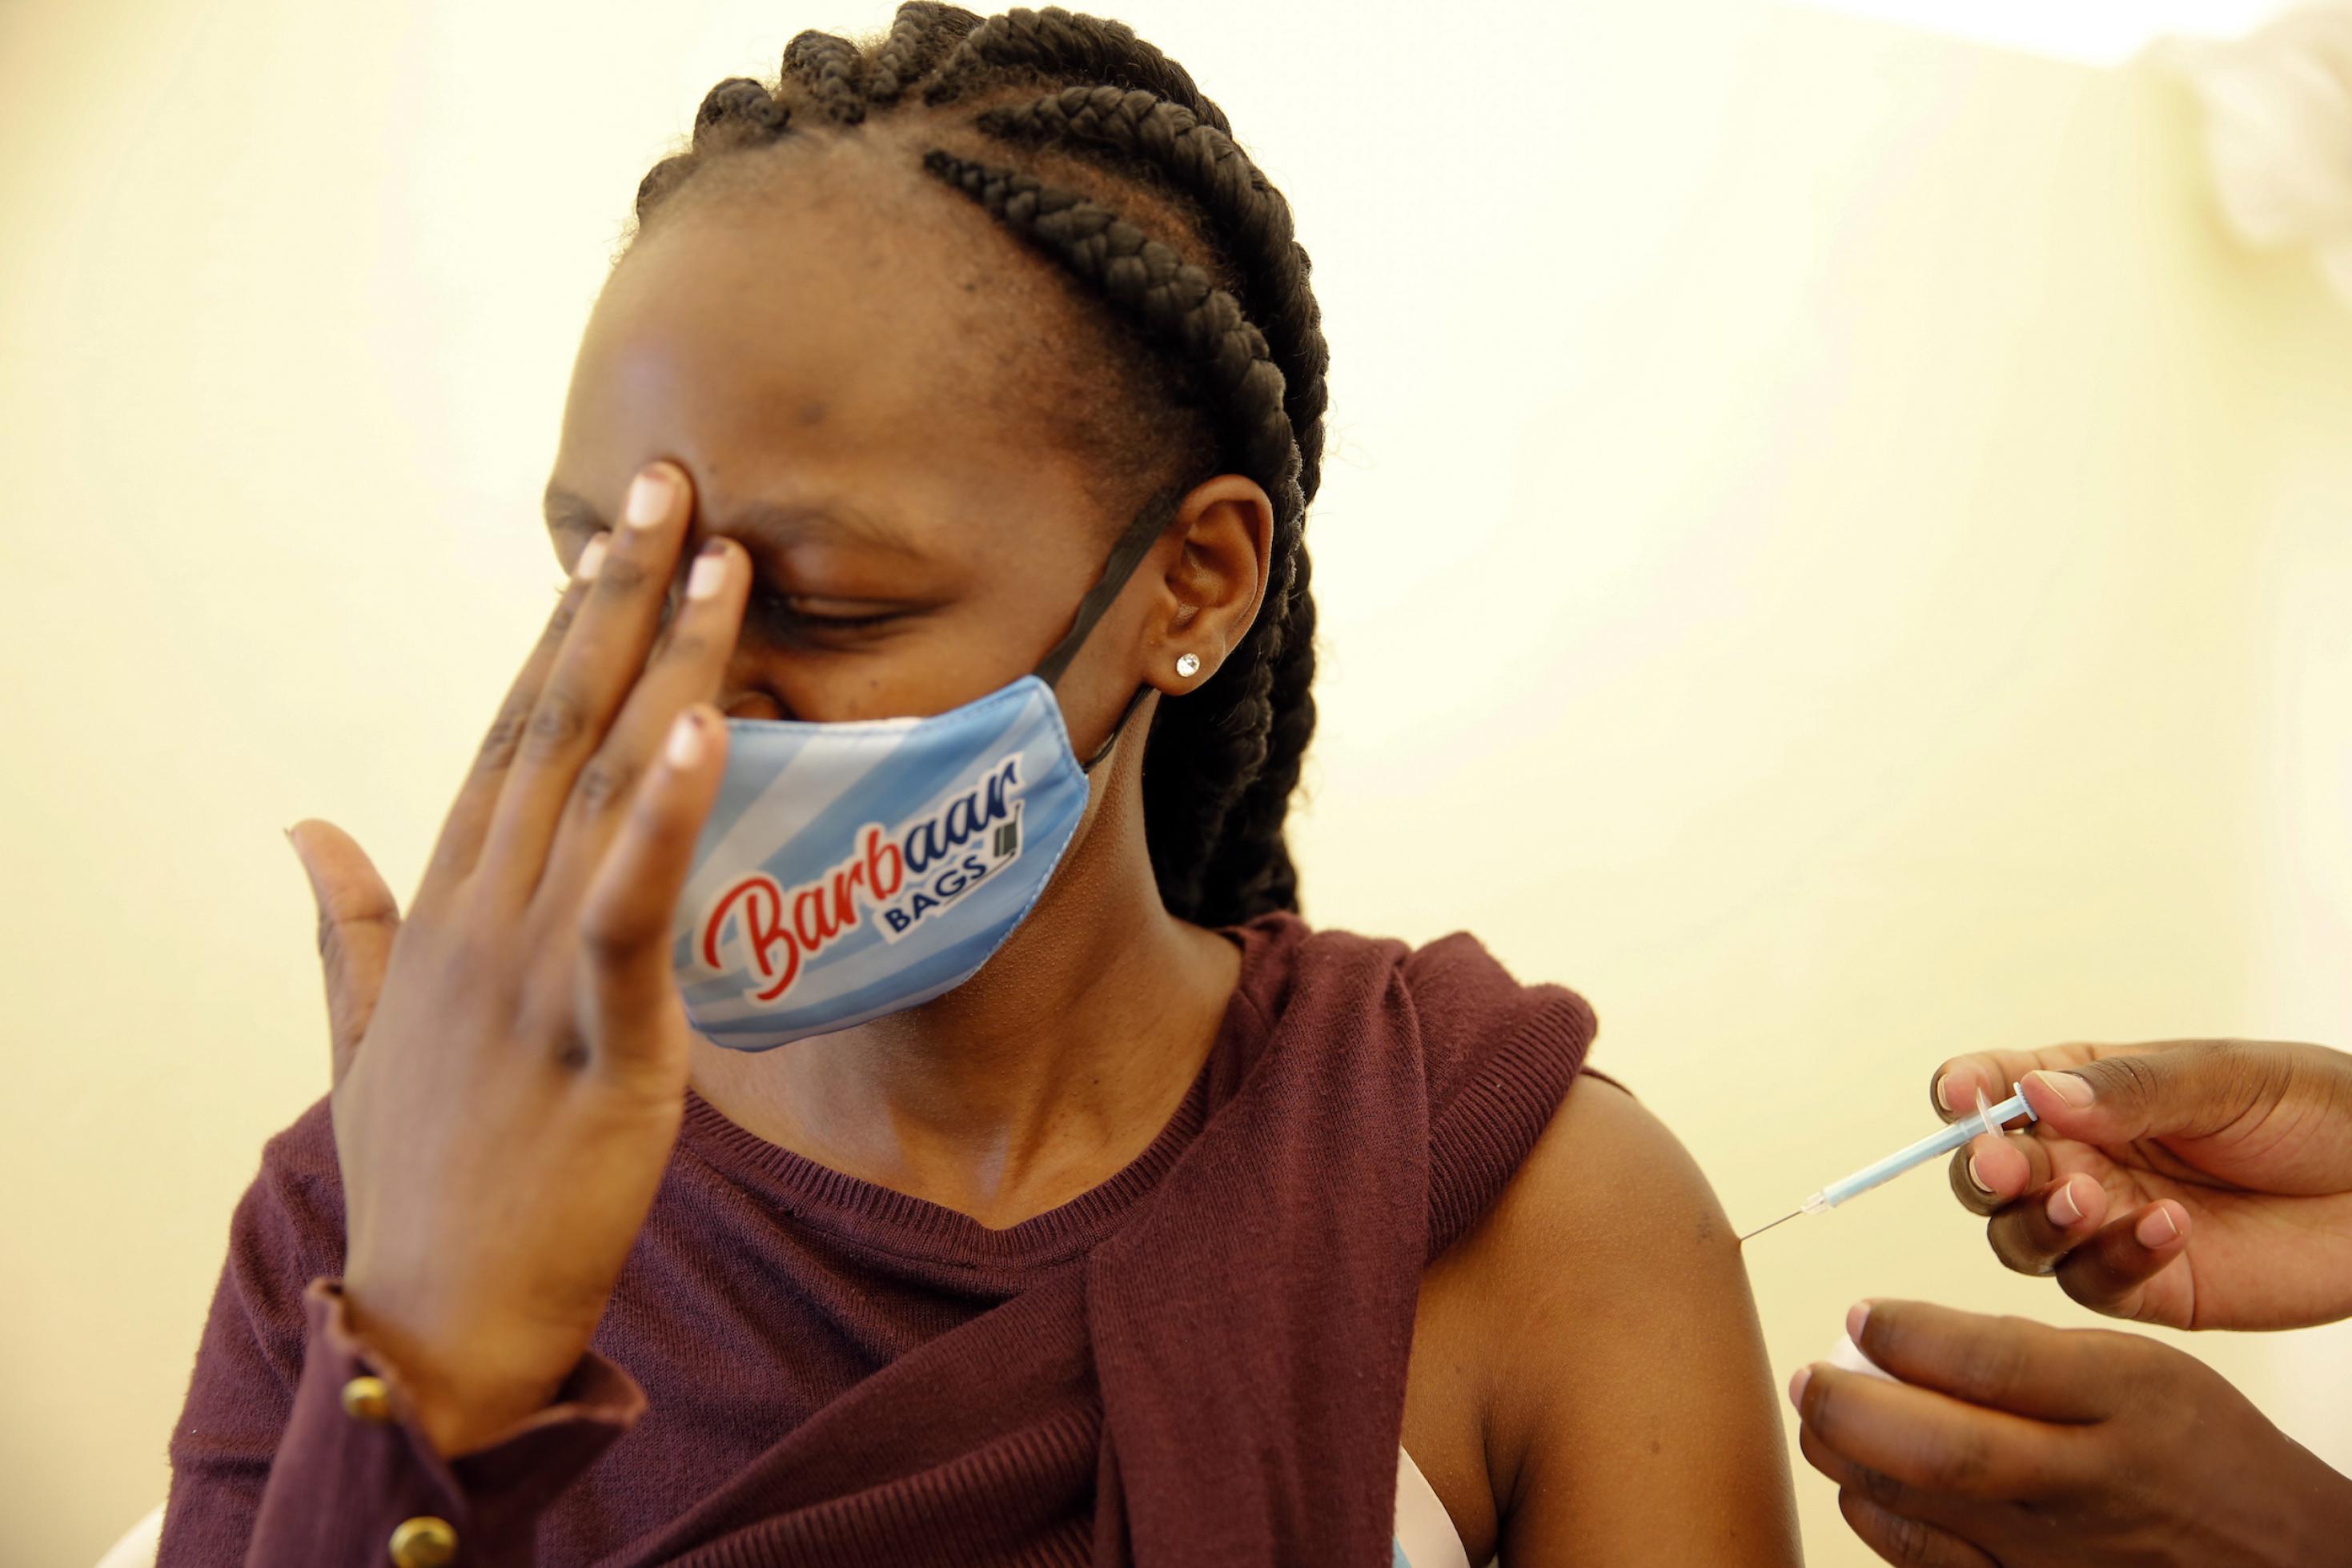 Die junge schwarze Frau hält sich die Finger ihrer rechten Hand an die Stirn, während sie die Impfspritze in den linken Oberarm bekommt.